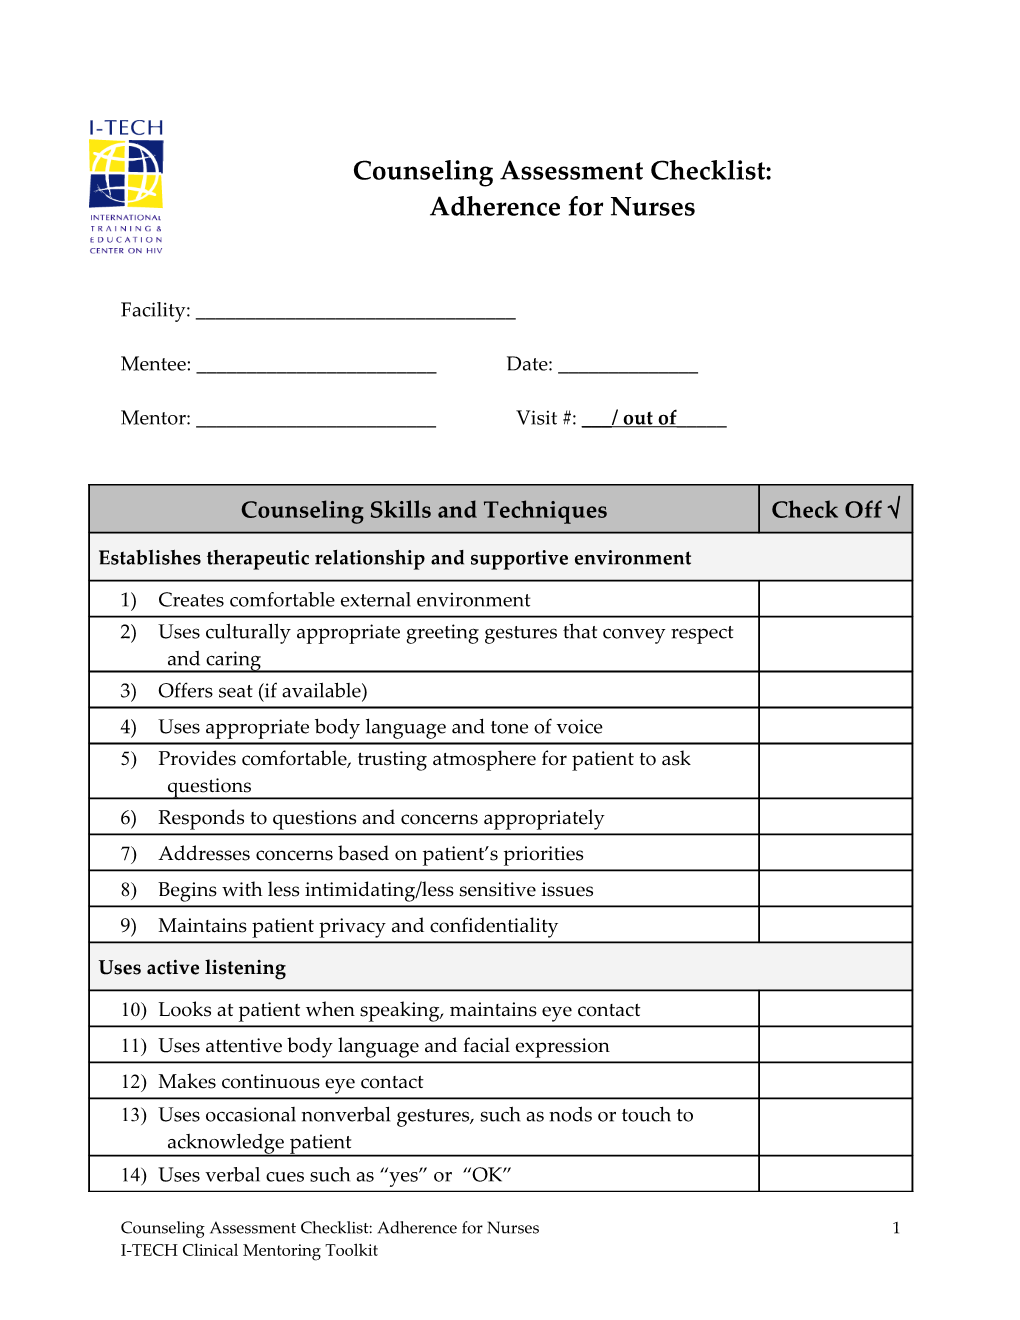 Training Implementation Assessment Tool for Nurses s1